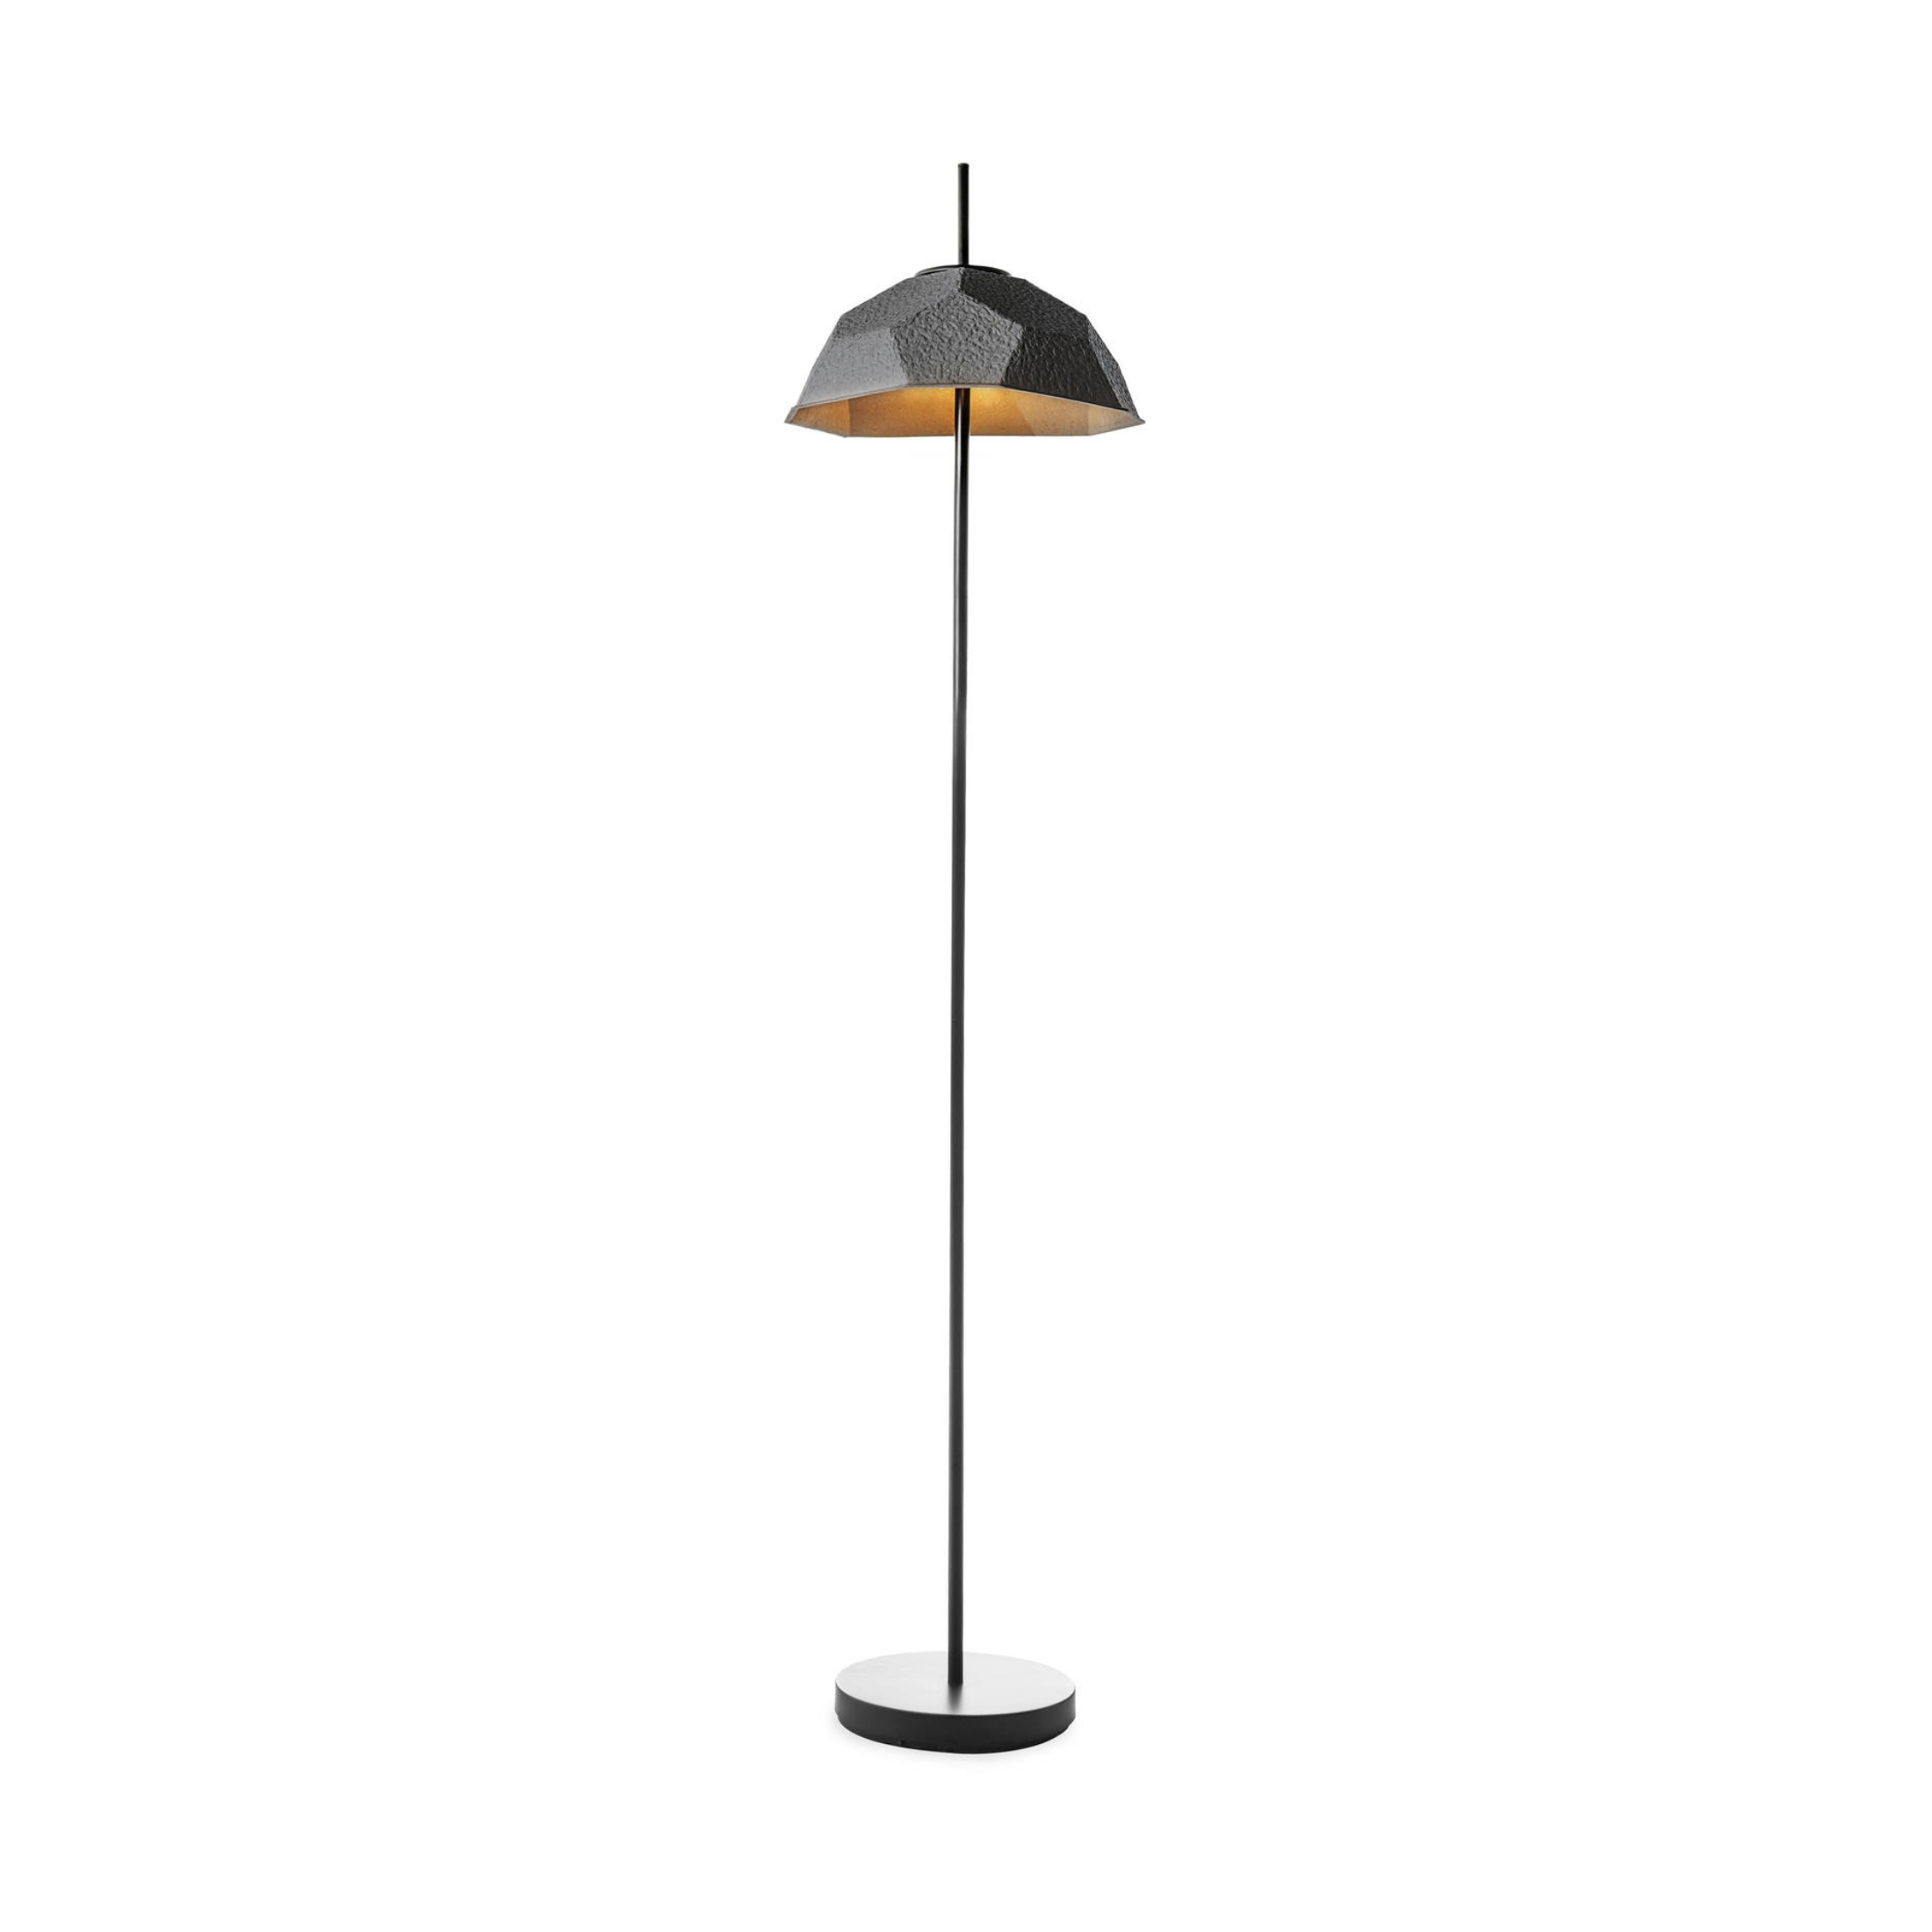 Lampe en métal avec abat-jour en carton recyclé "Oeuf" pour sol, table et suspension